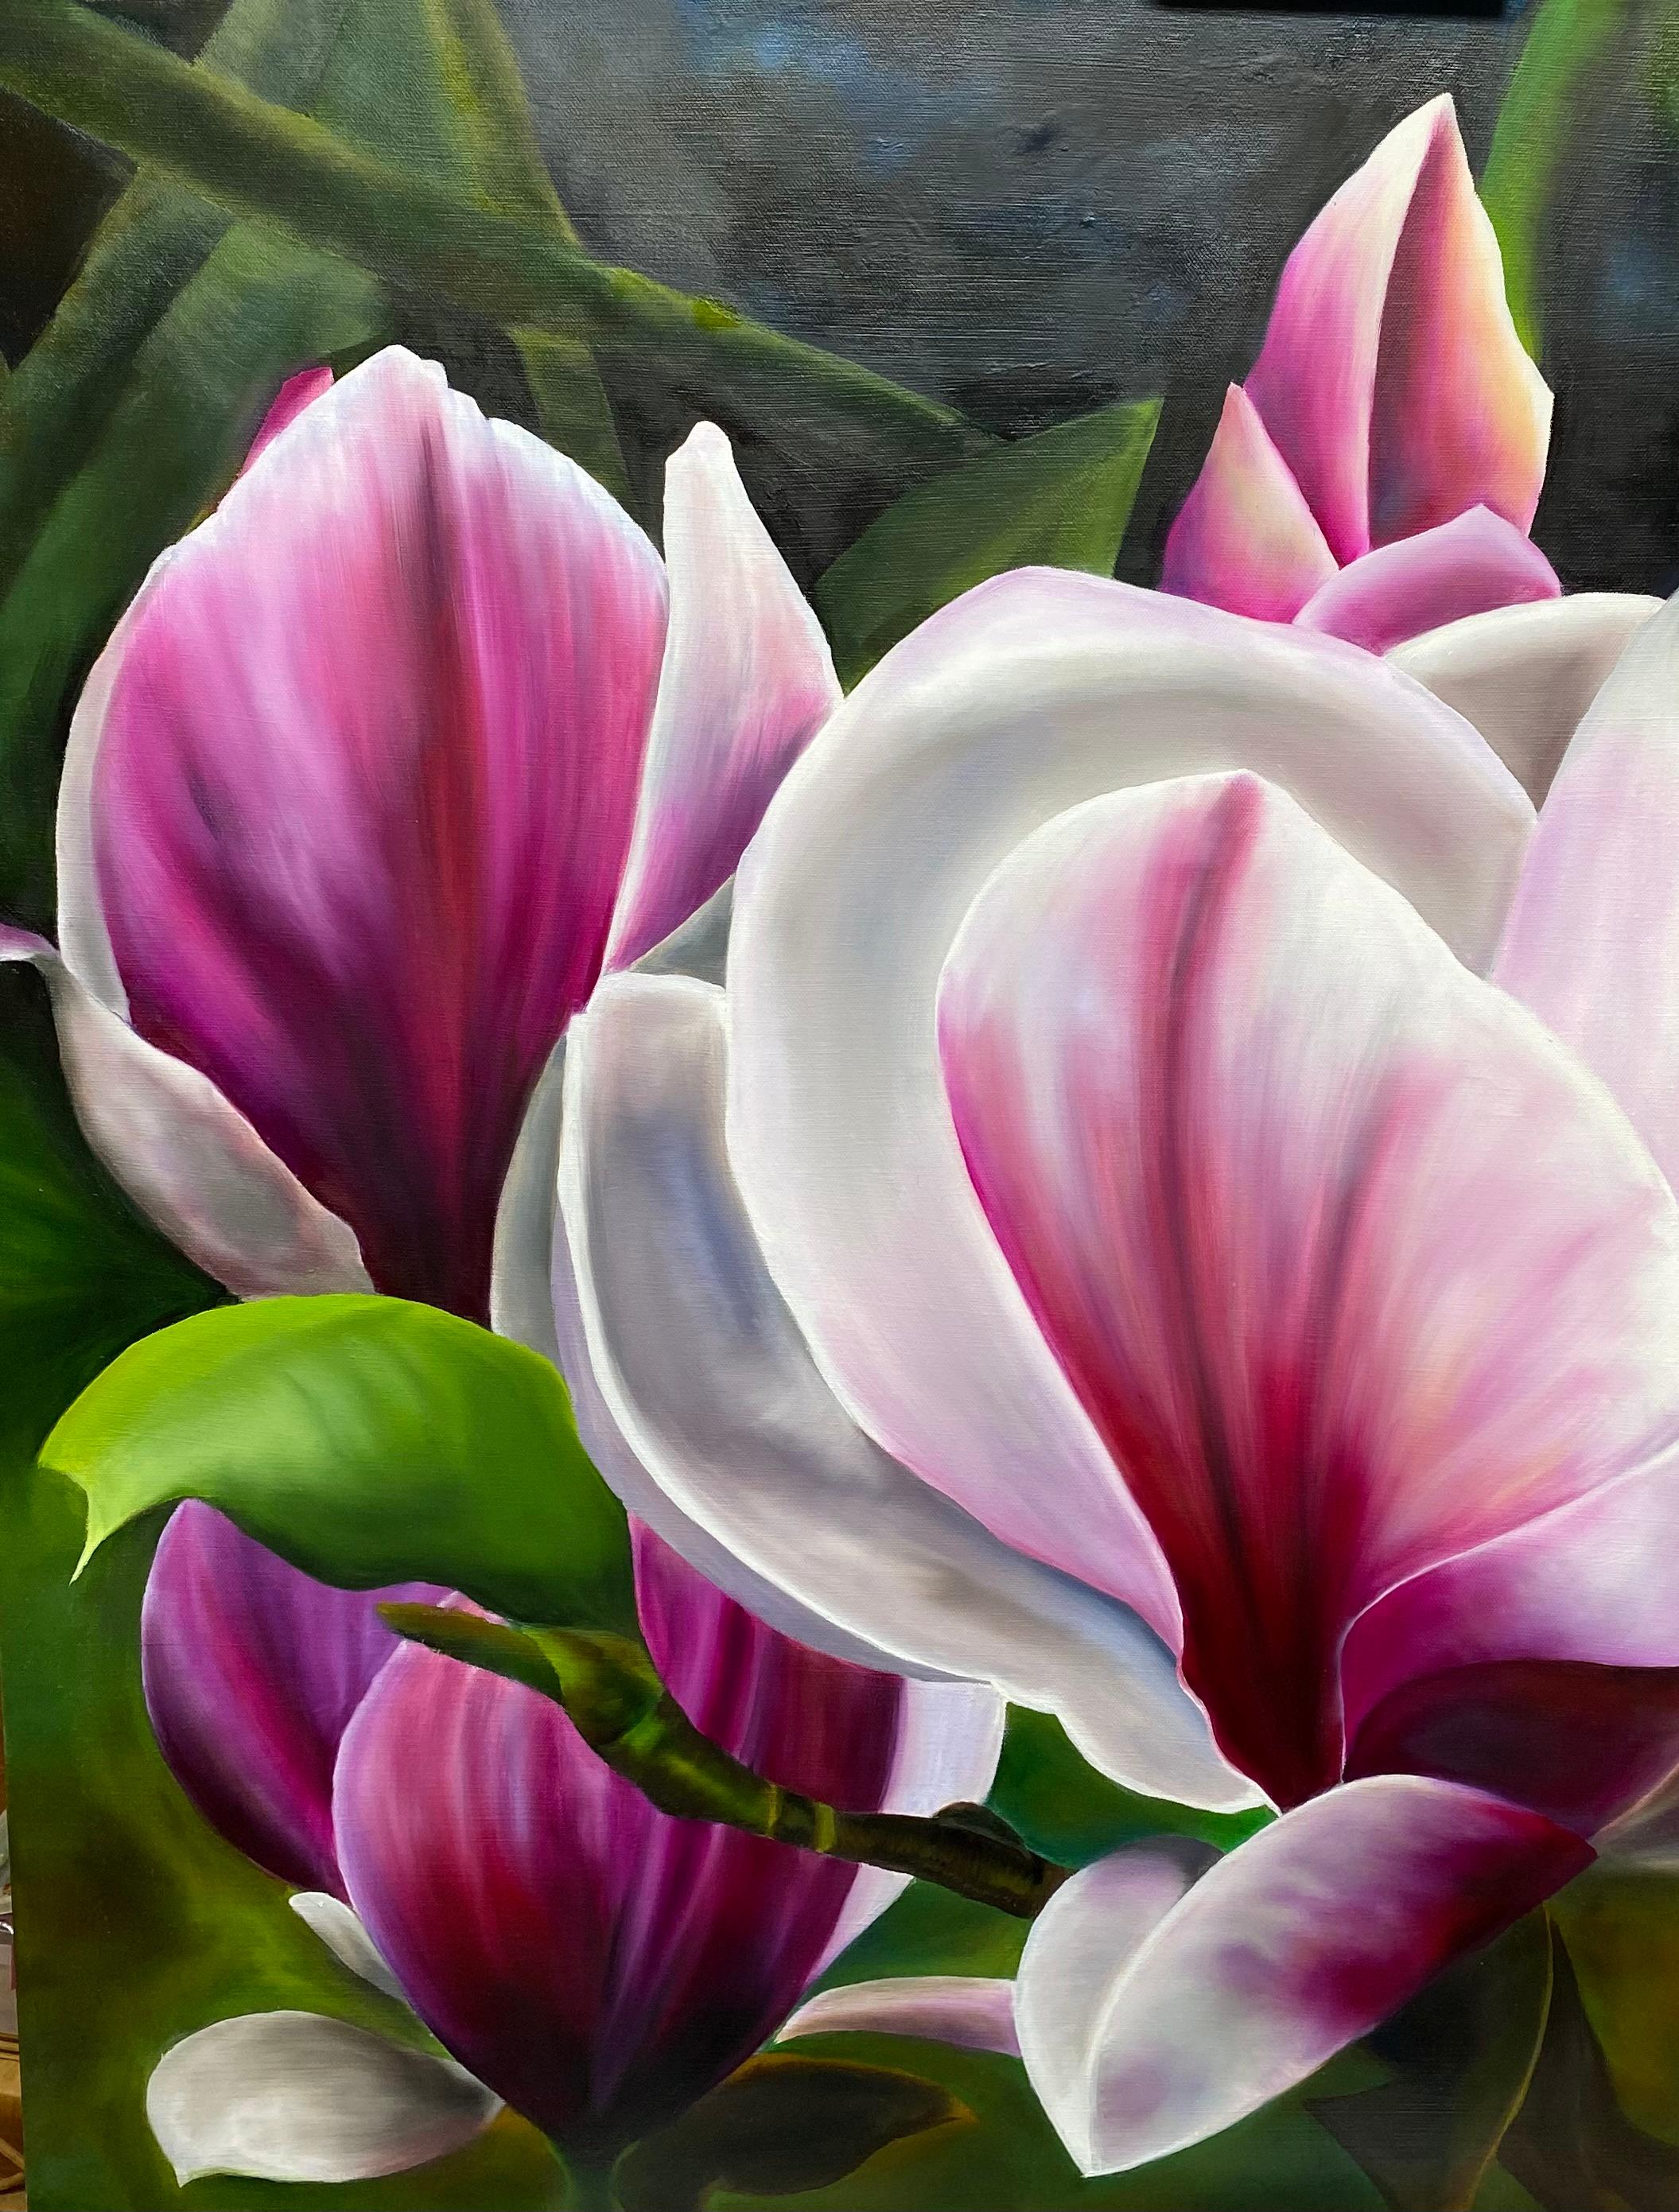 Susan est originaire de Houston. Elle est passionnée par la peinture à l'huile et se spécialise dans les fleurs à grande échelle. C'est en photographiant des fleurs lors de ses promenades quotidiennes qu'elle a eu l'idée de commencer à peindre des